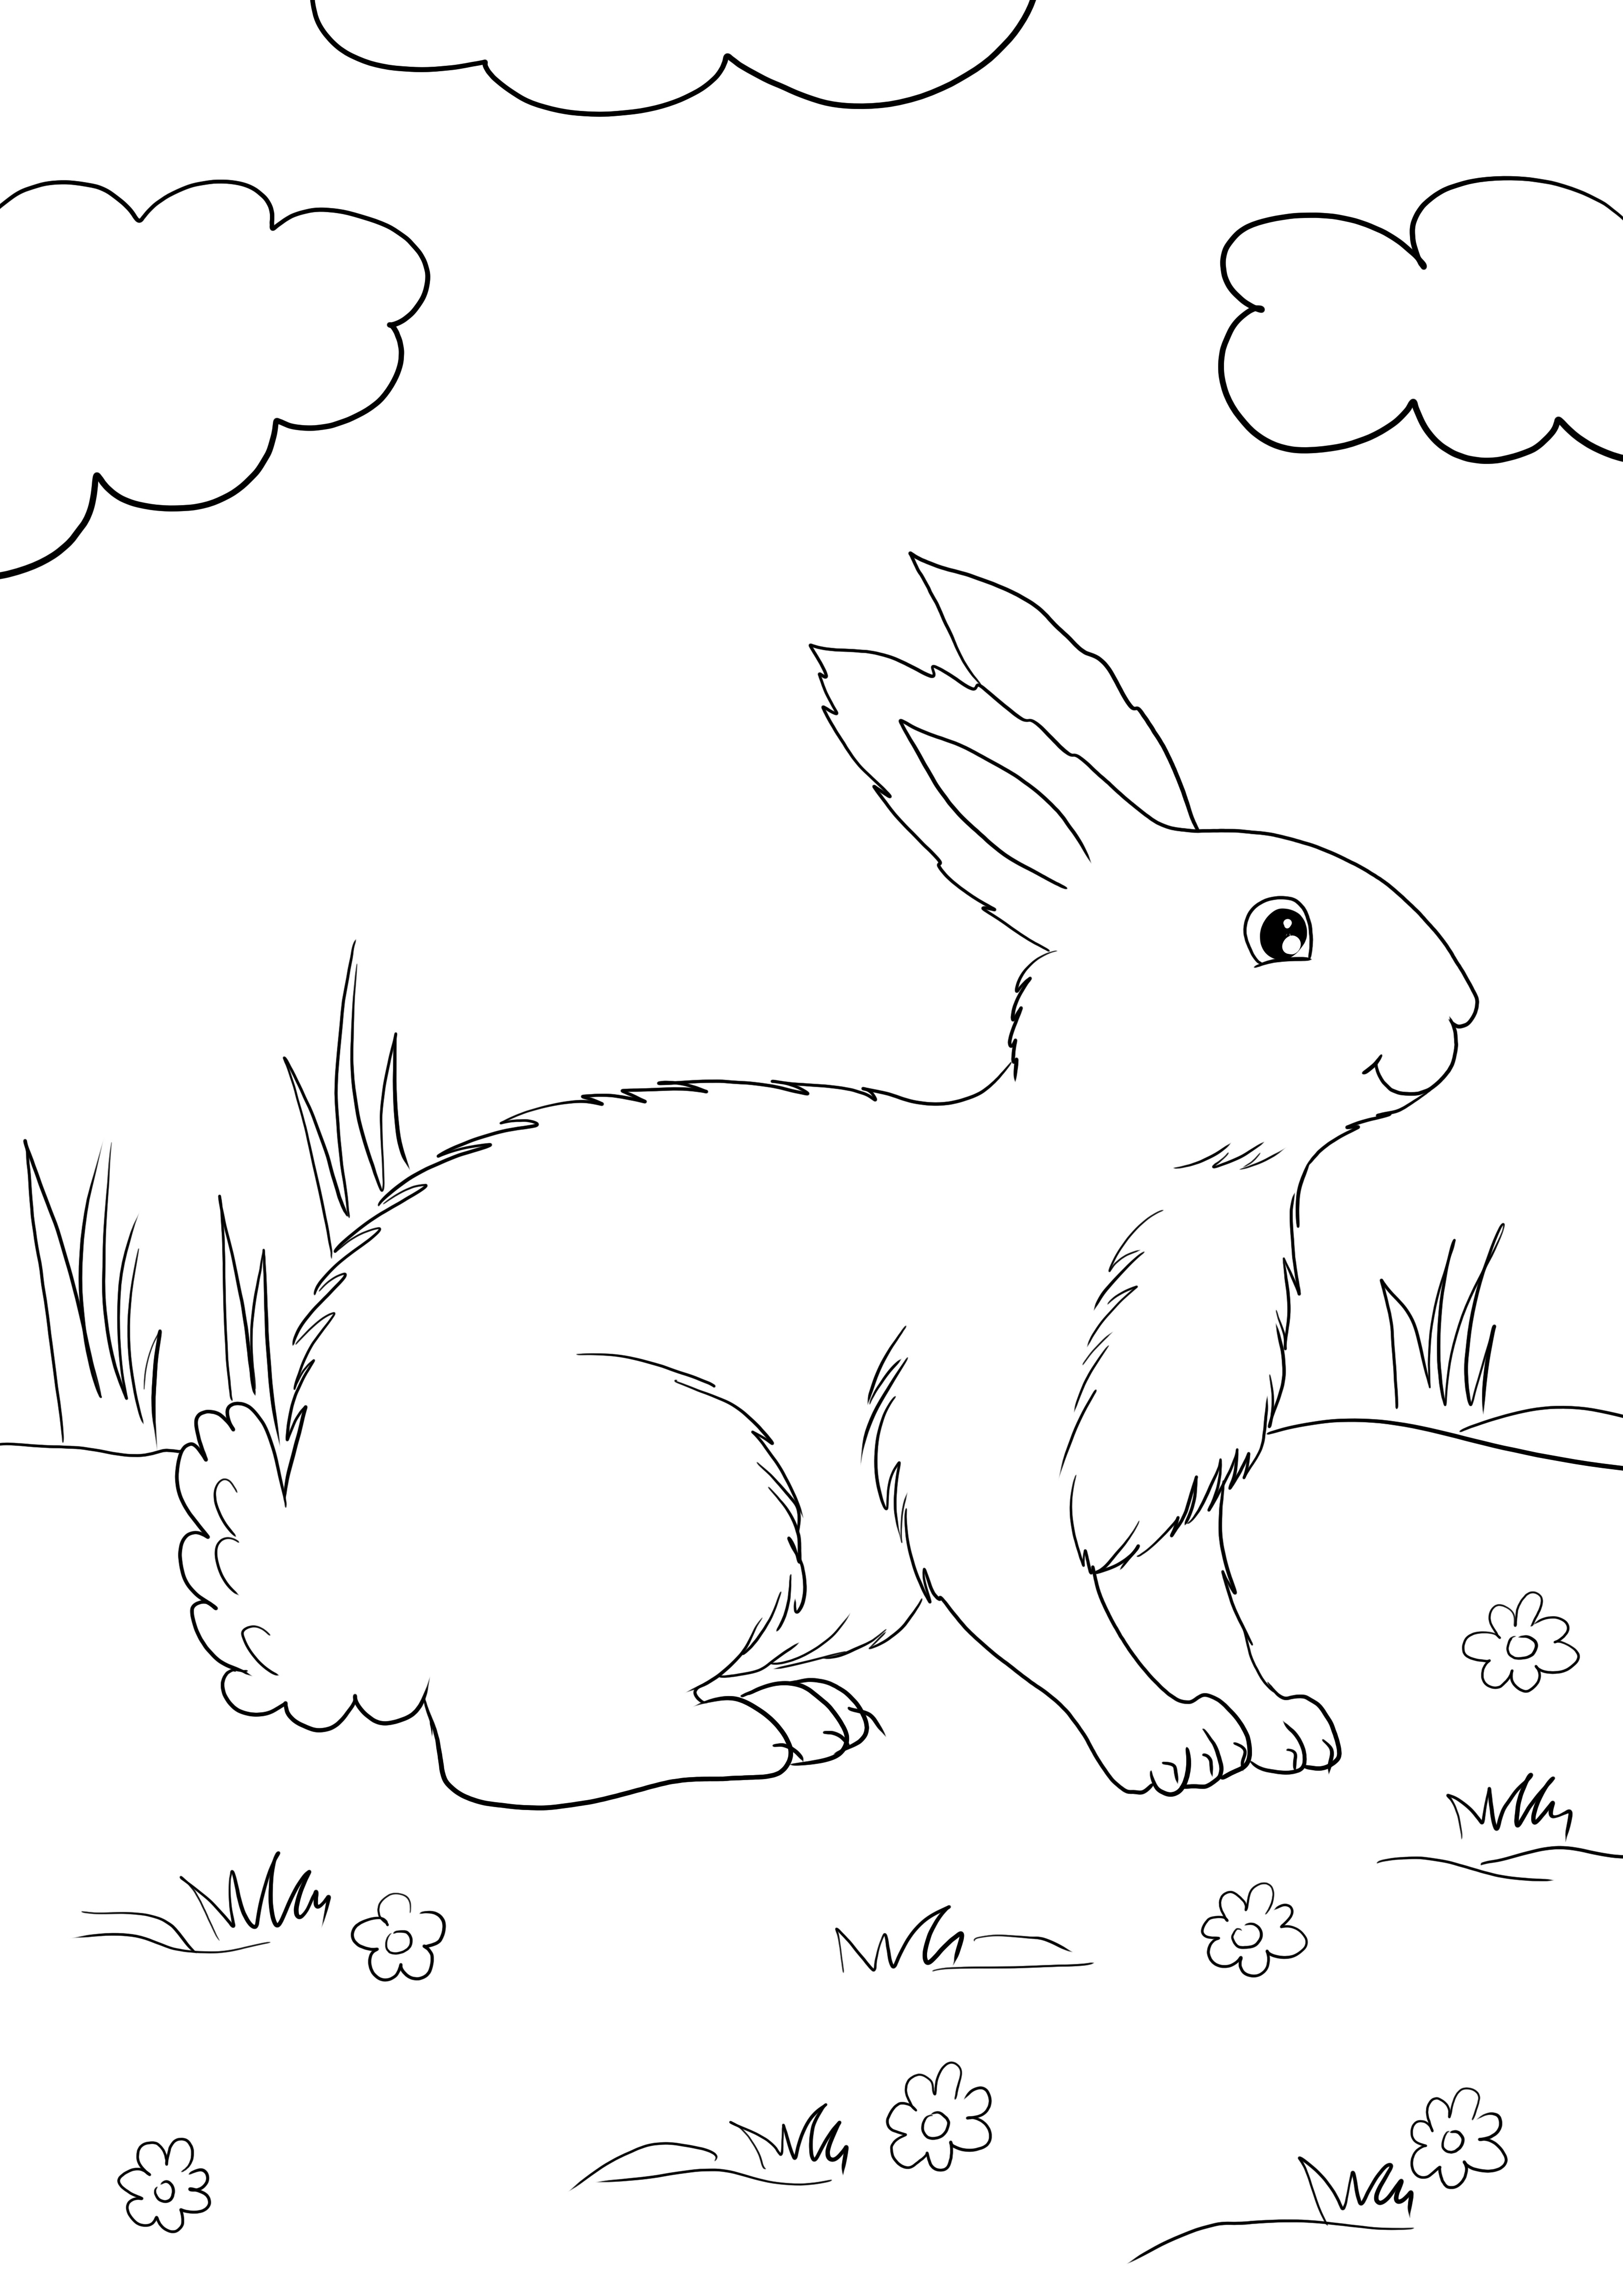 Aranyos White Rabbit ingyenes ajándék, amely könnyen nyomtatható és színezhető, és megismerkedhet a nyulakkal